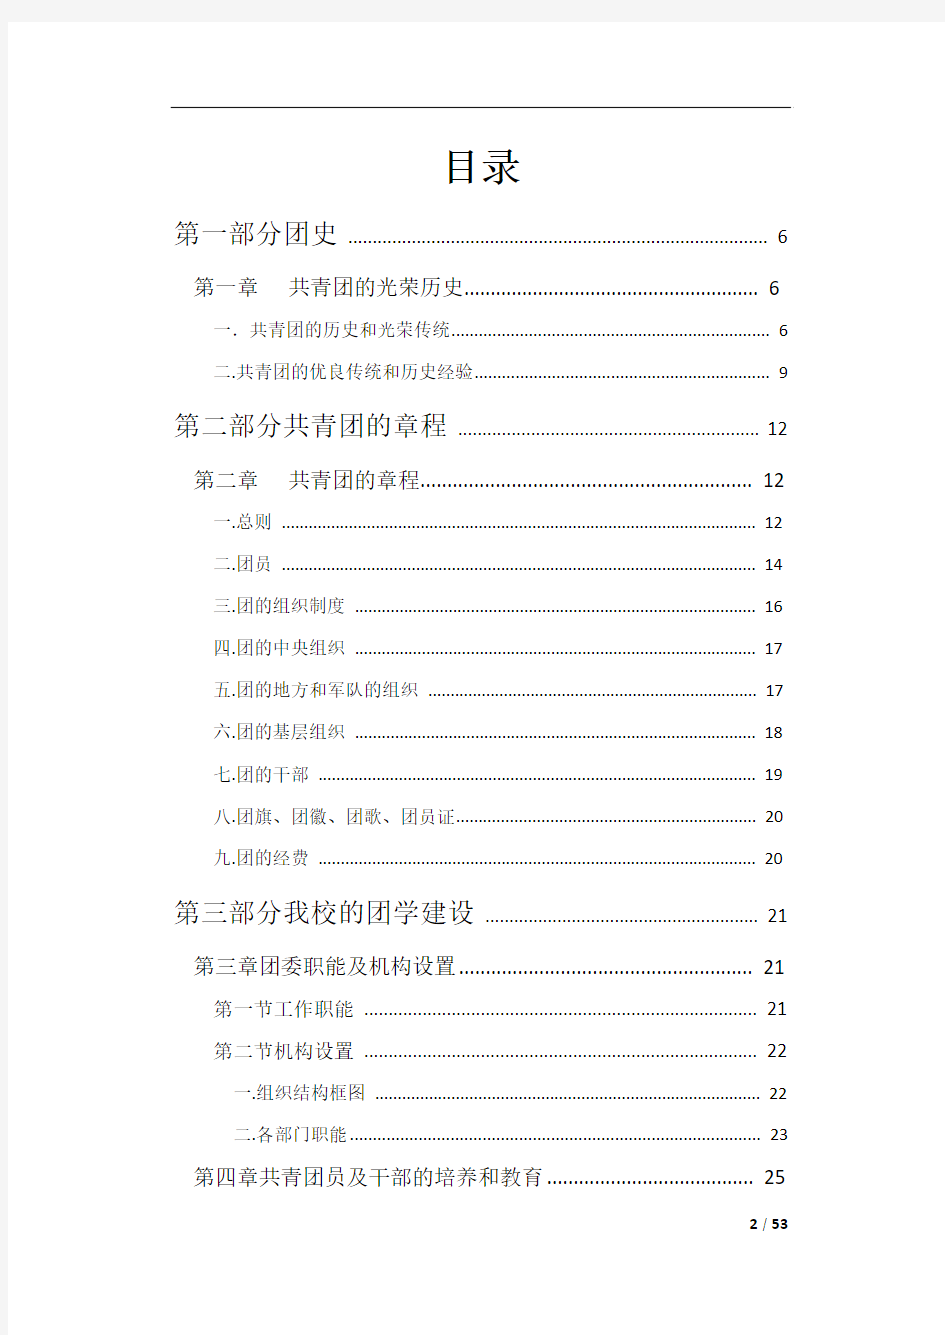 华北电力大学2015级新生团校学员手册